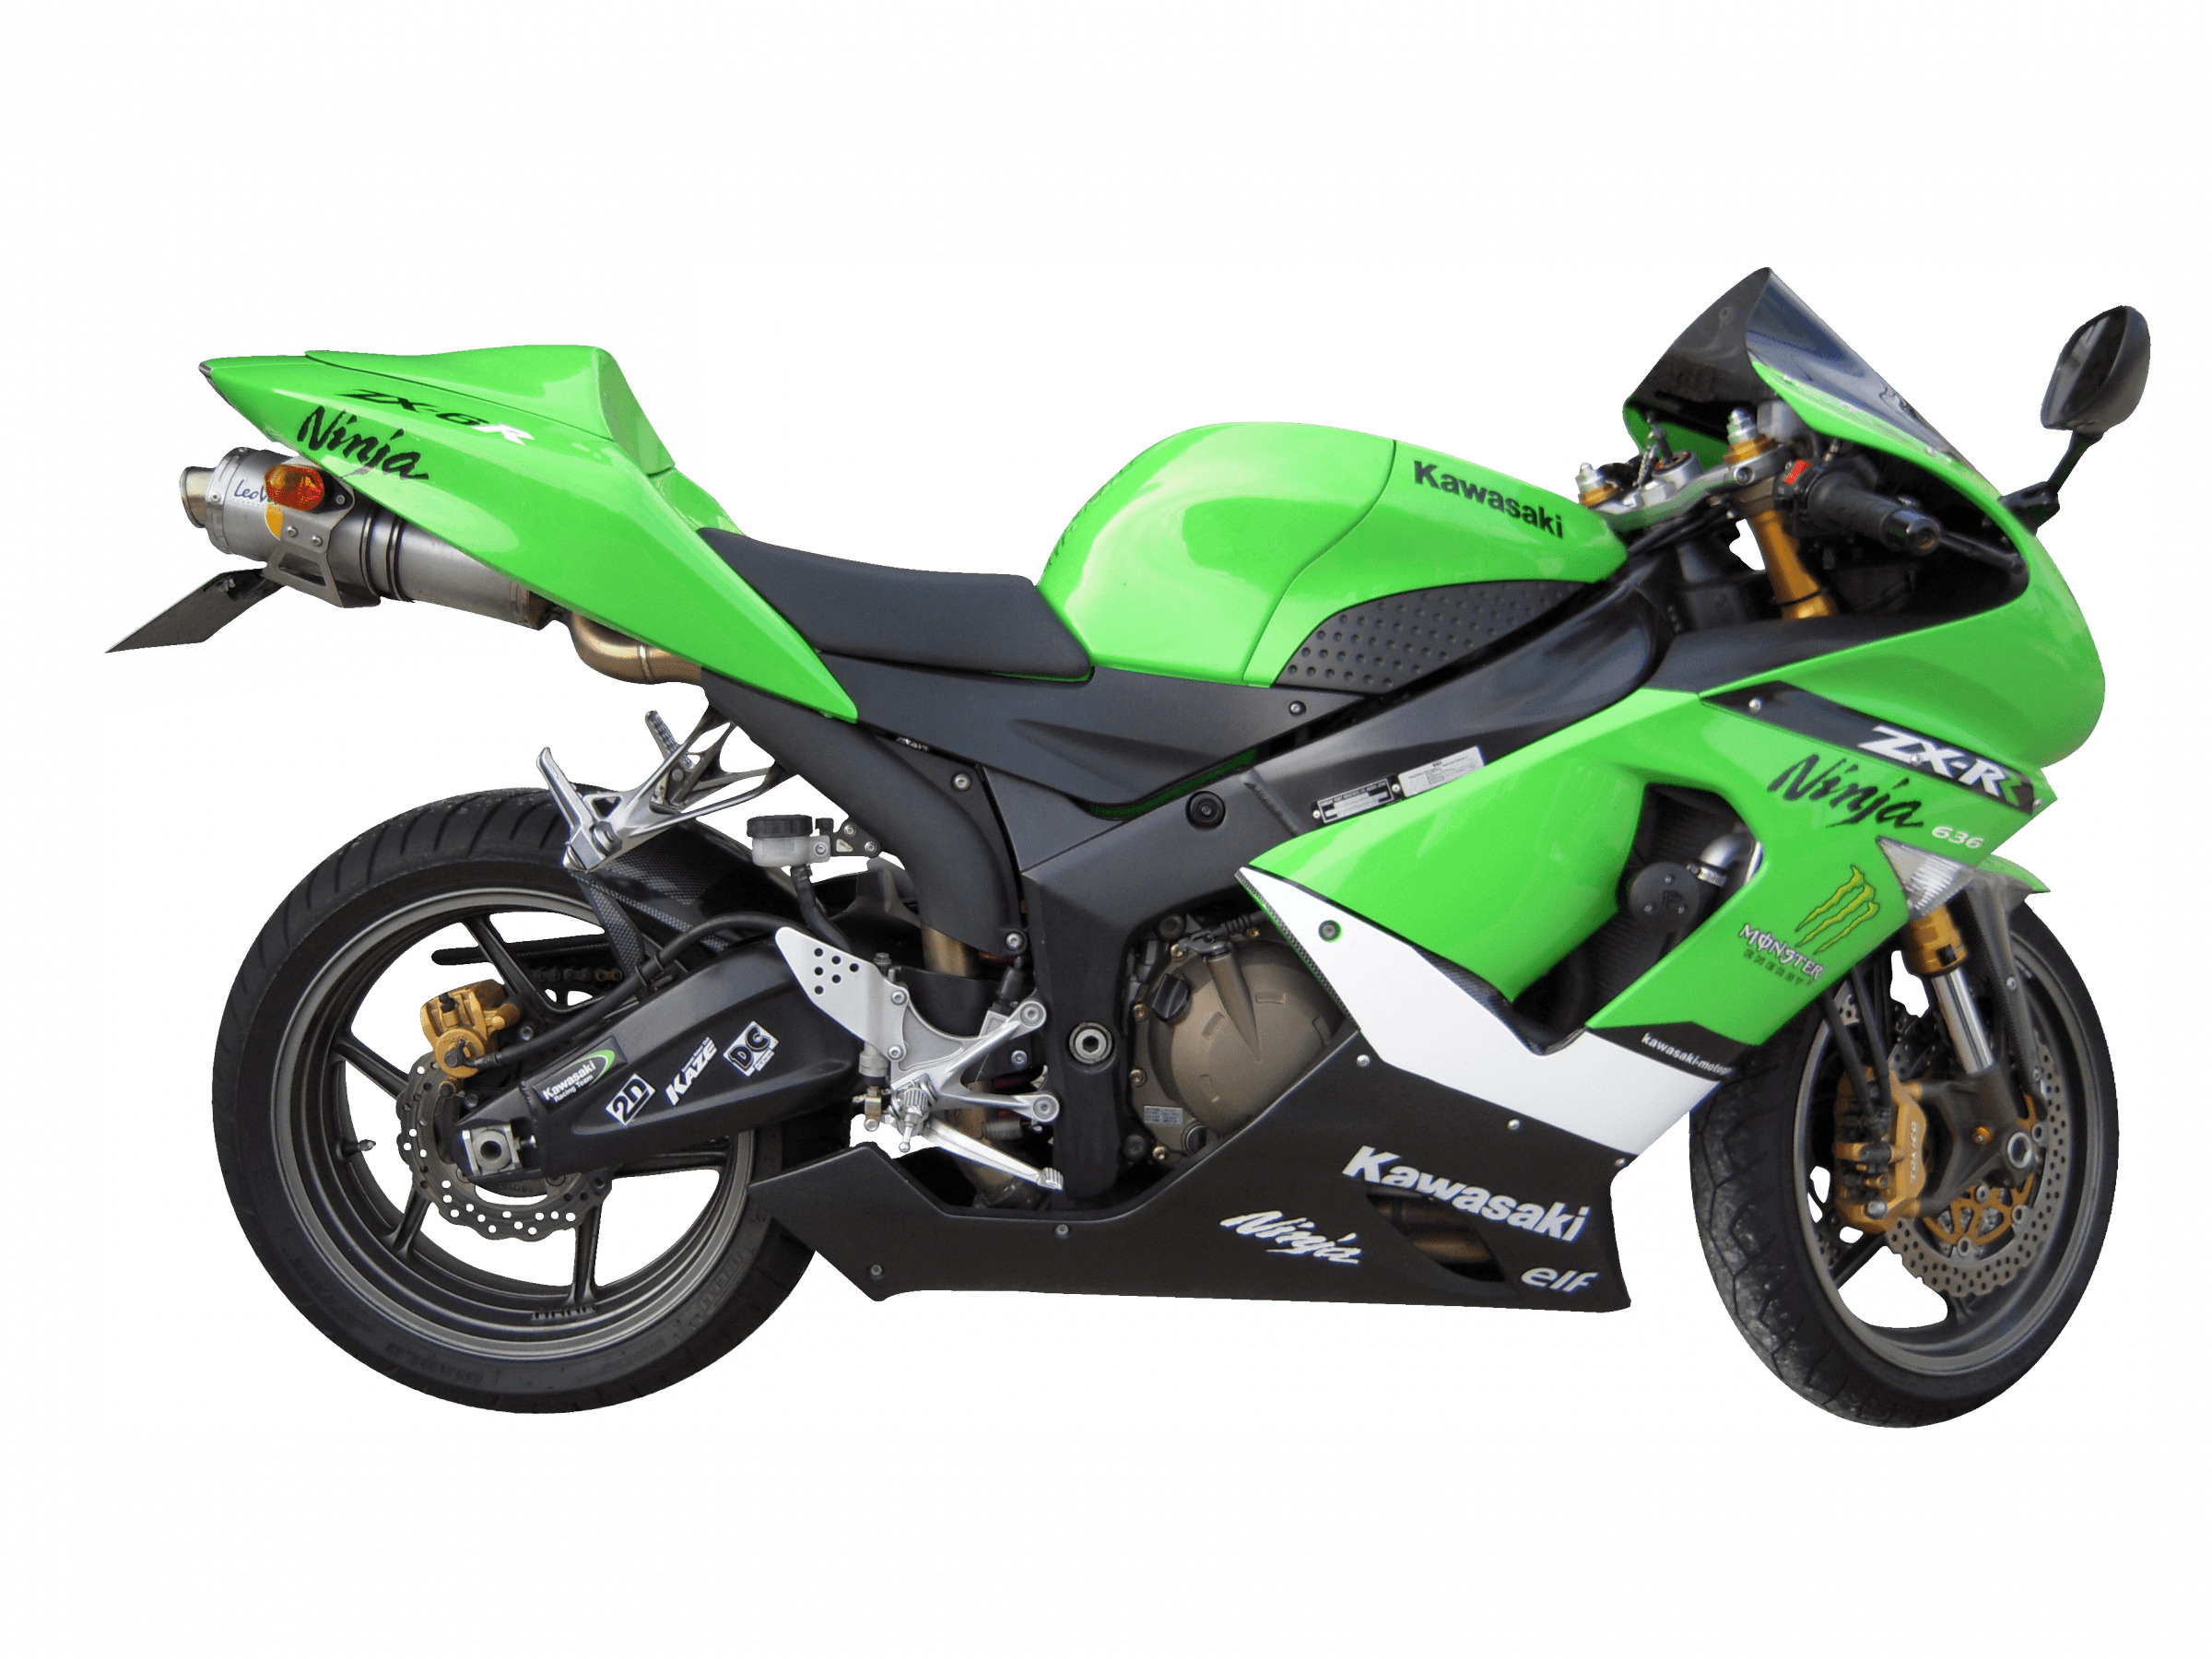 Green Kawasaki Motorcycle icons